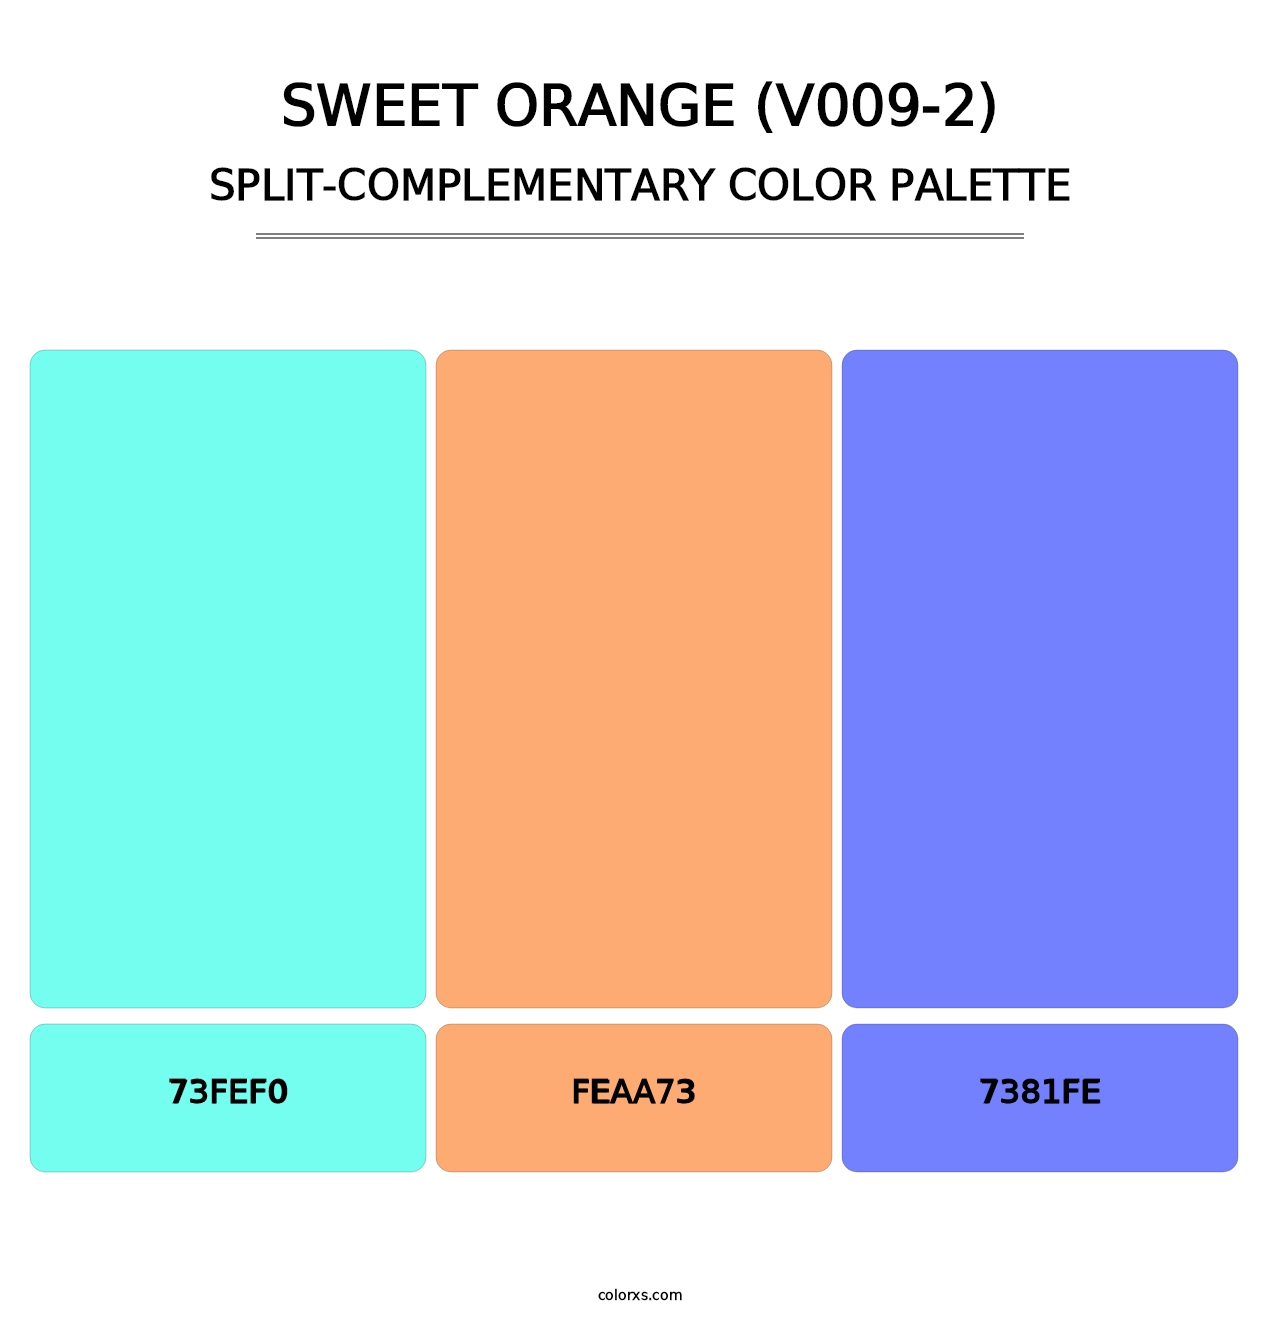 Sweet Orange (V009-2) - Split-Complementary Color Palette